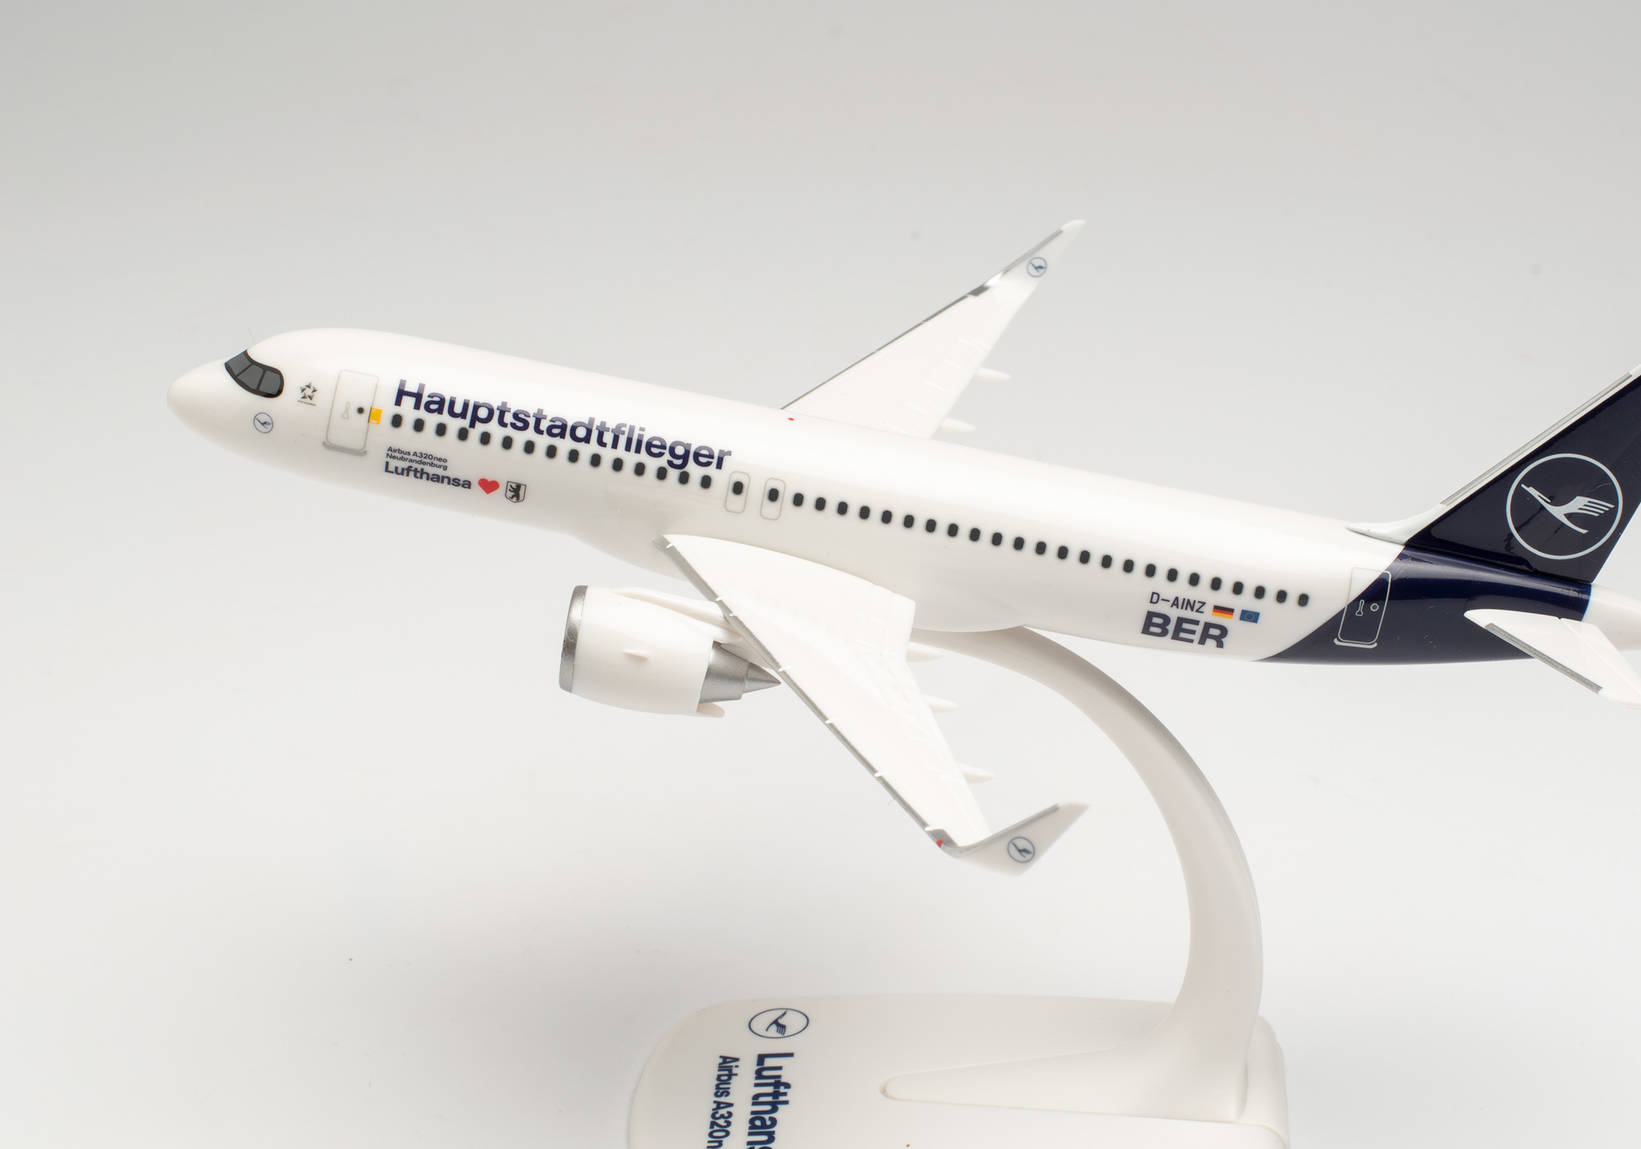 Snap-Fit: Lufthansa Airbus A320neo “Hauptstadtflieger” – D-AINZ